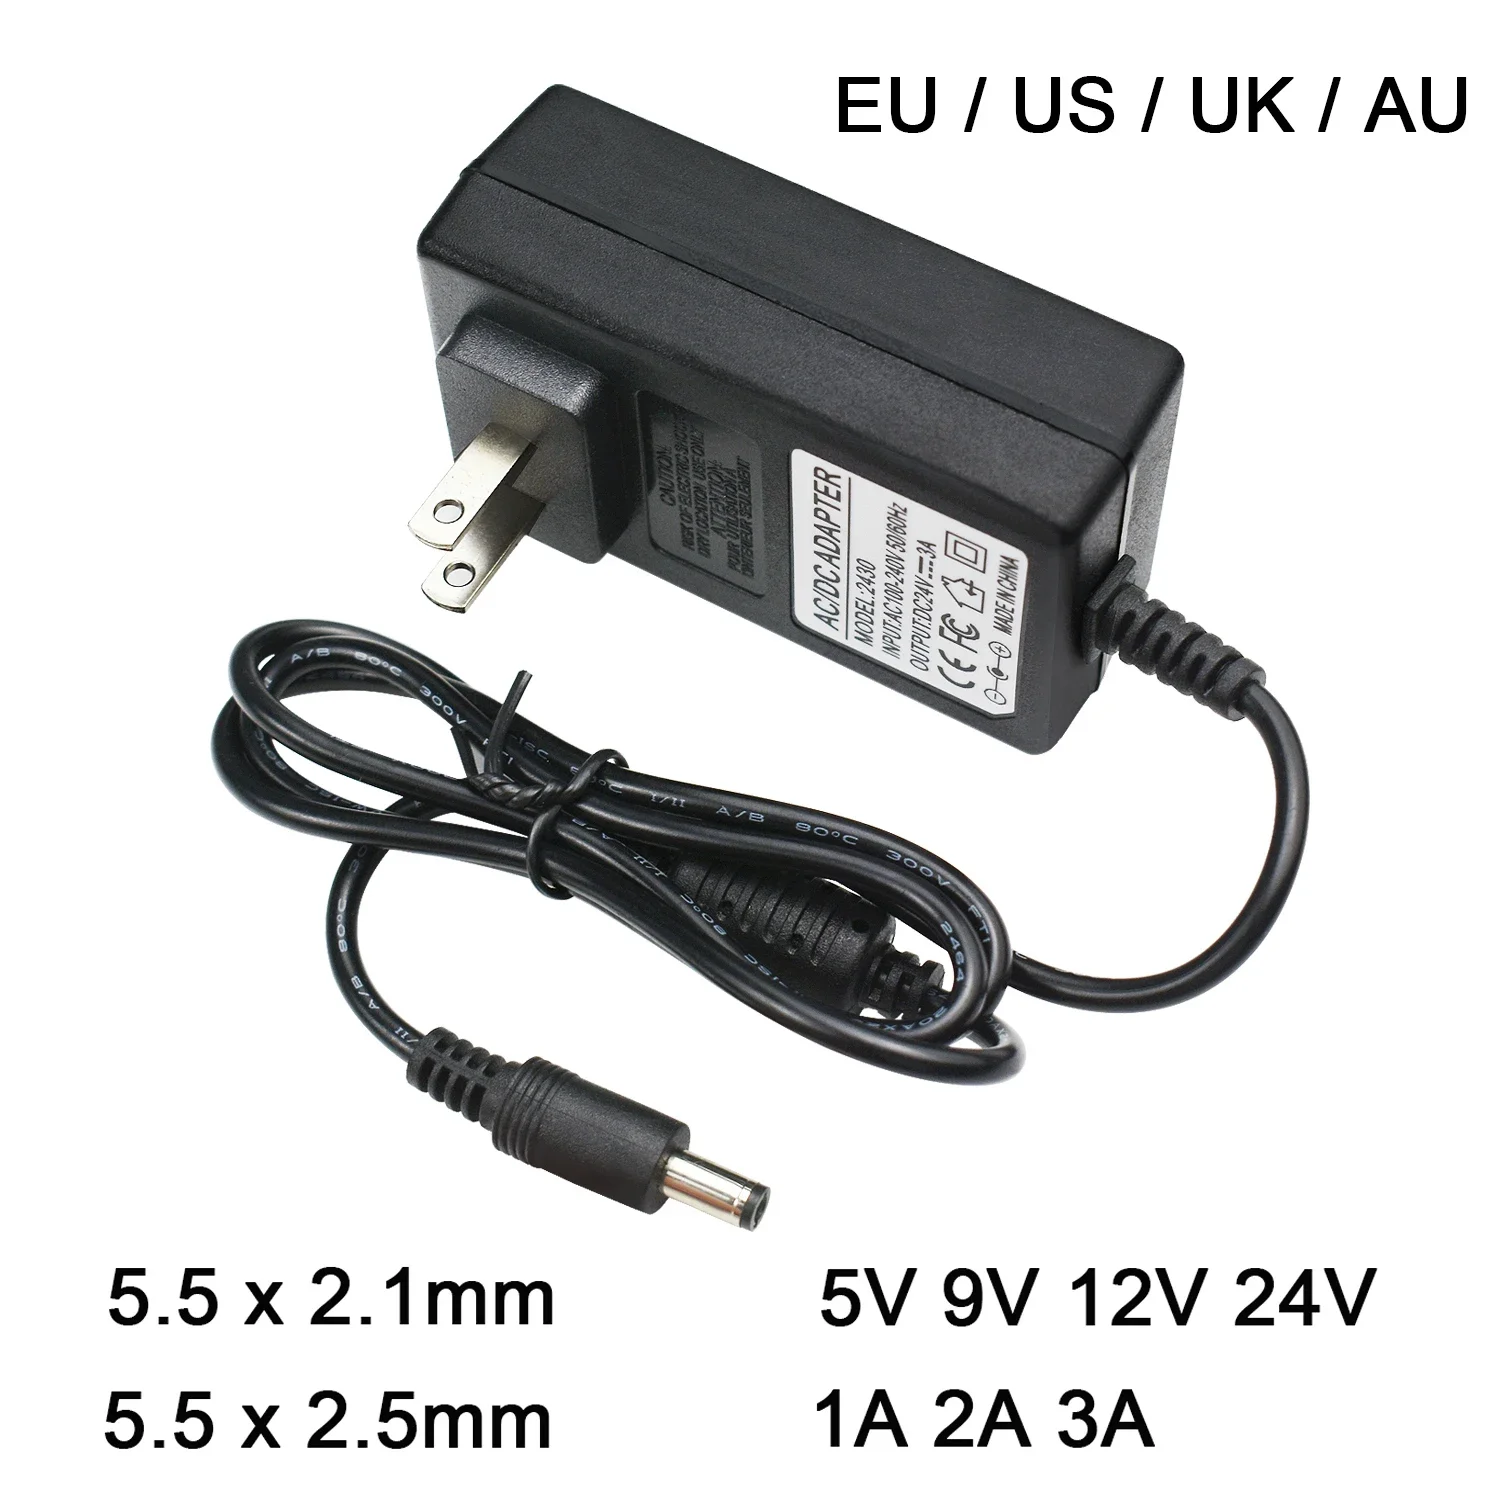 

AC110-240V To DC 5V 9V 12V 24V 1A 2A 3A Universal Power Adapter 5.5*2.1/2.5mm EU US AU UK Supply Charger for LED Strip Light TV